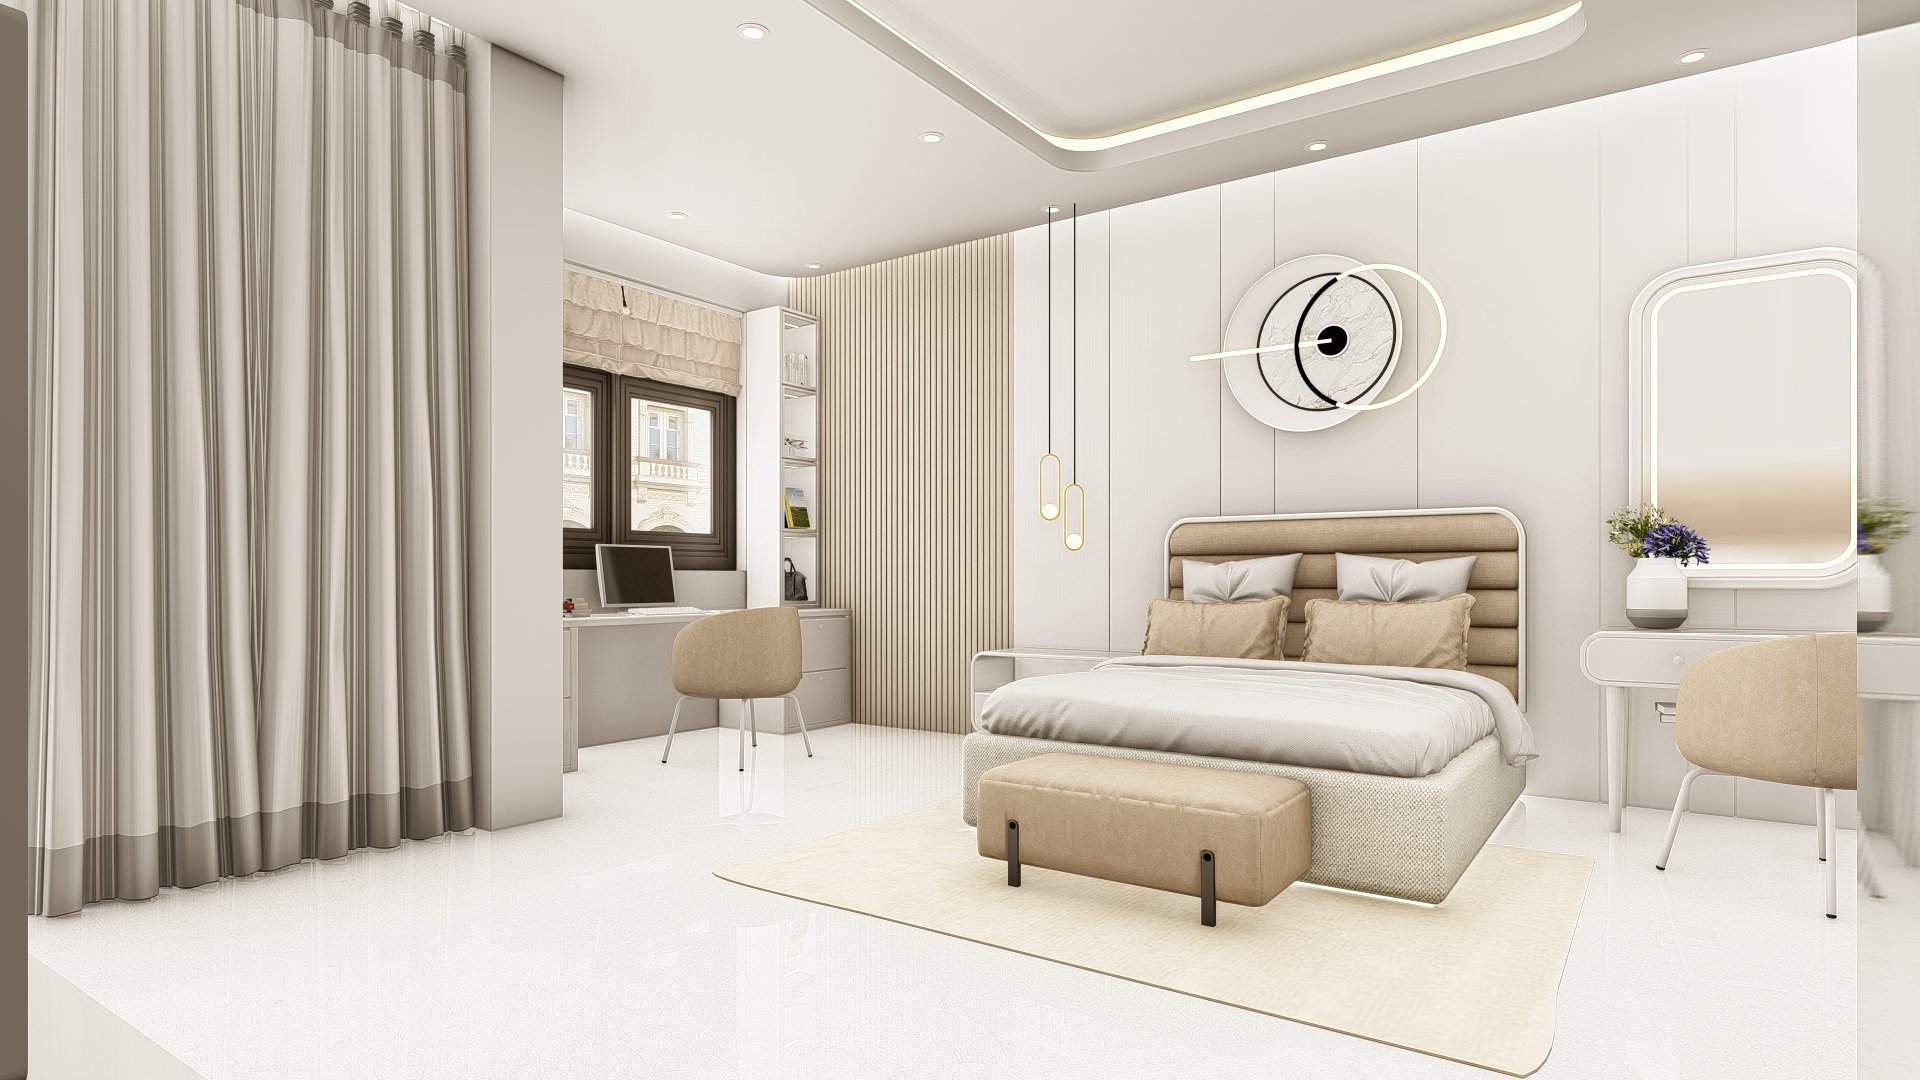 Thiết kế phòng ngủ hiện đại và lãng mạn